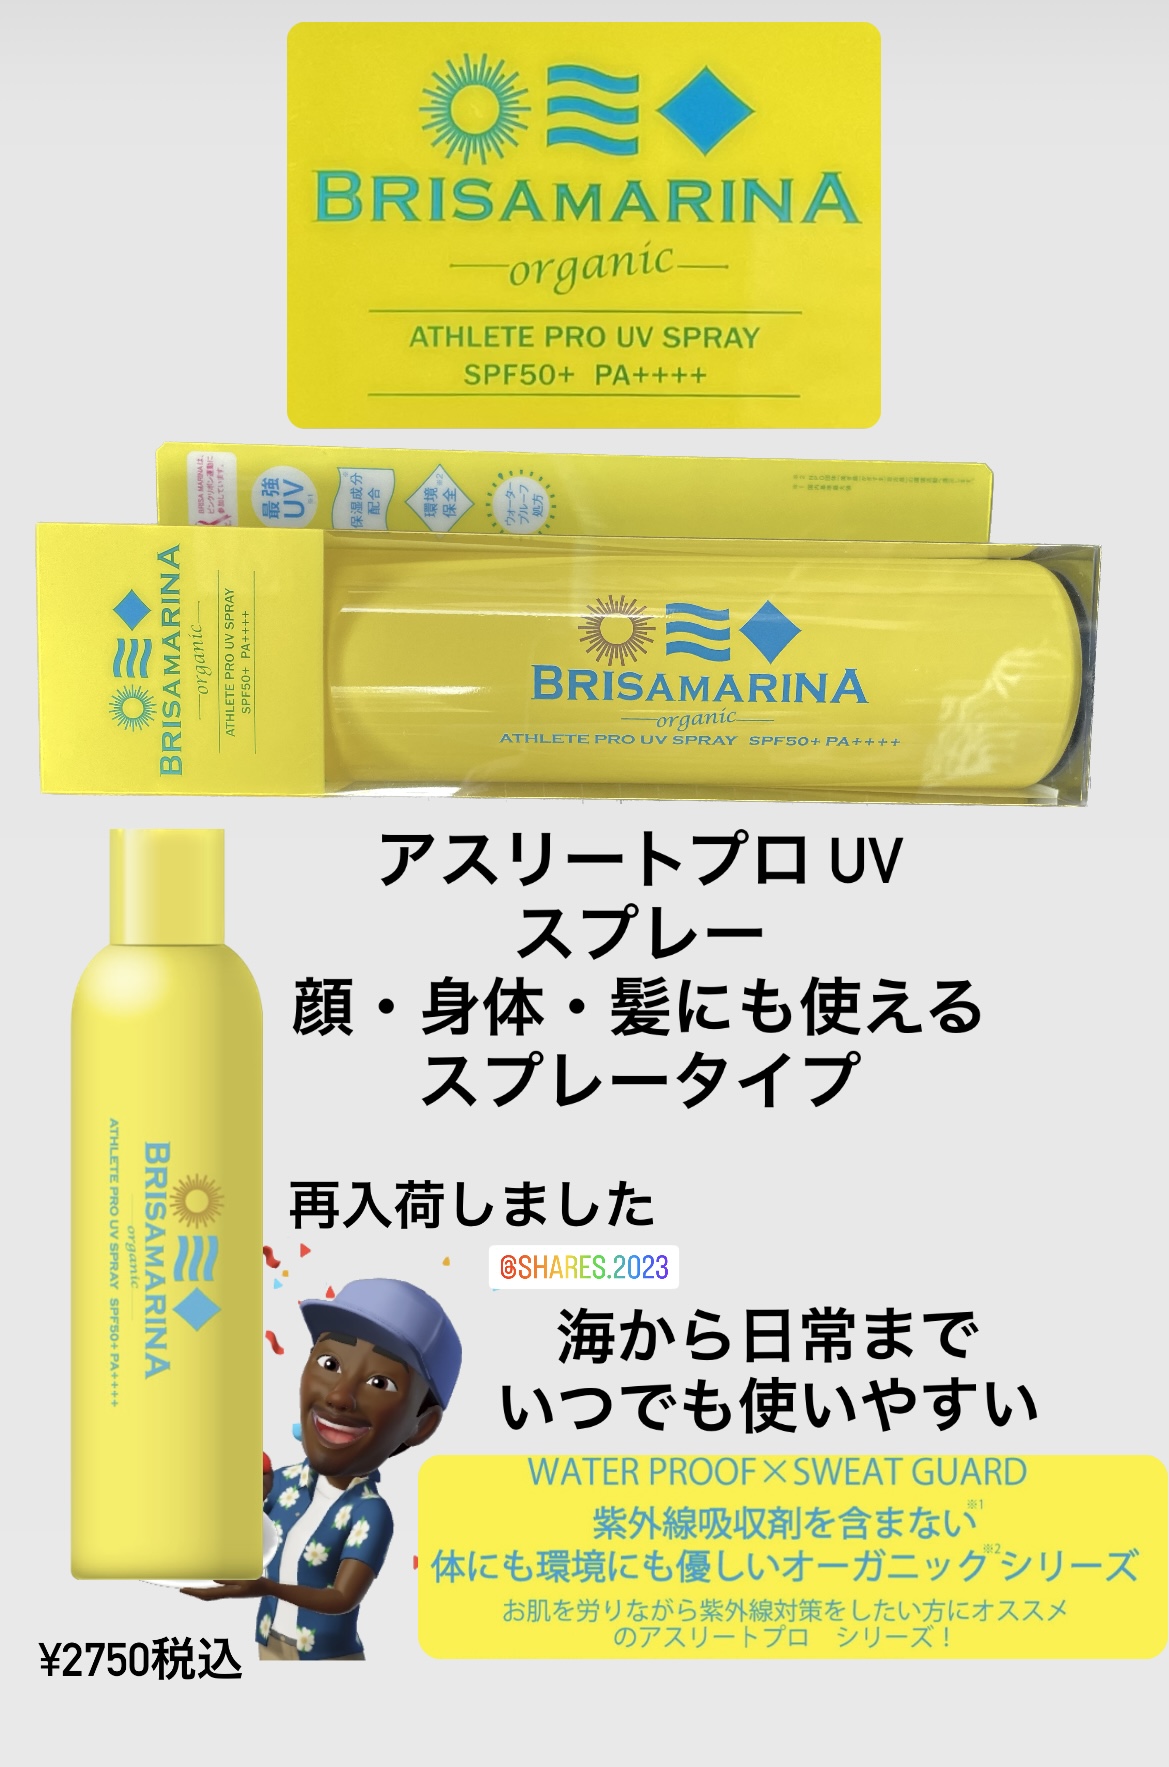 BRISAMARINA organic. 【 日焼け止めスプレー】¥2750税込